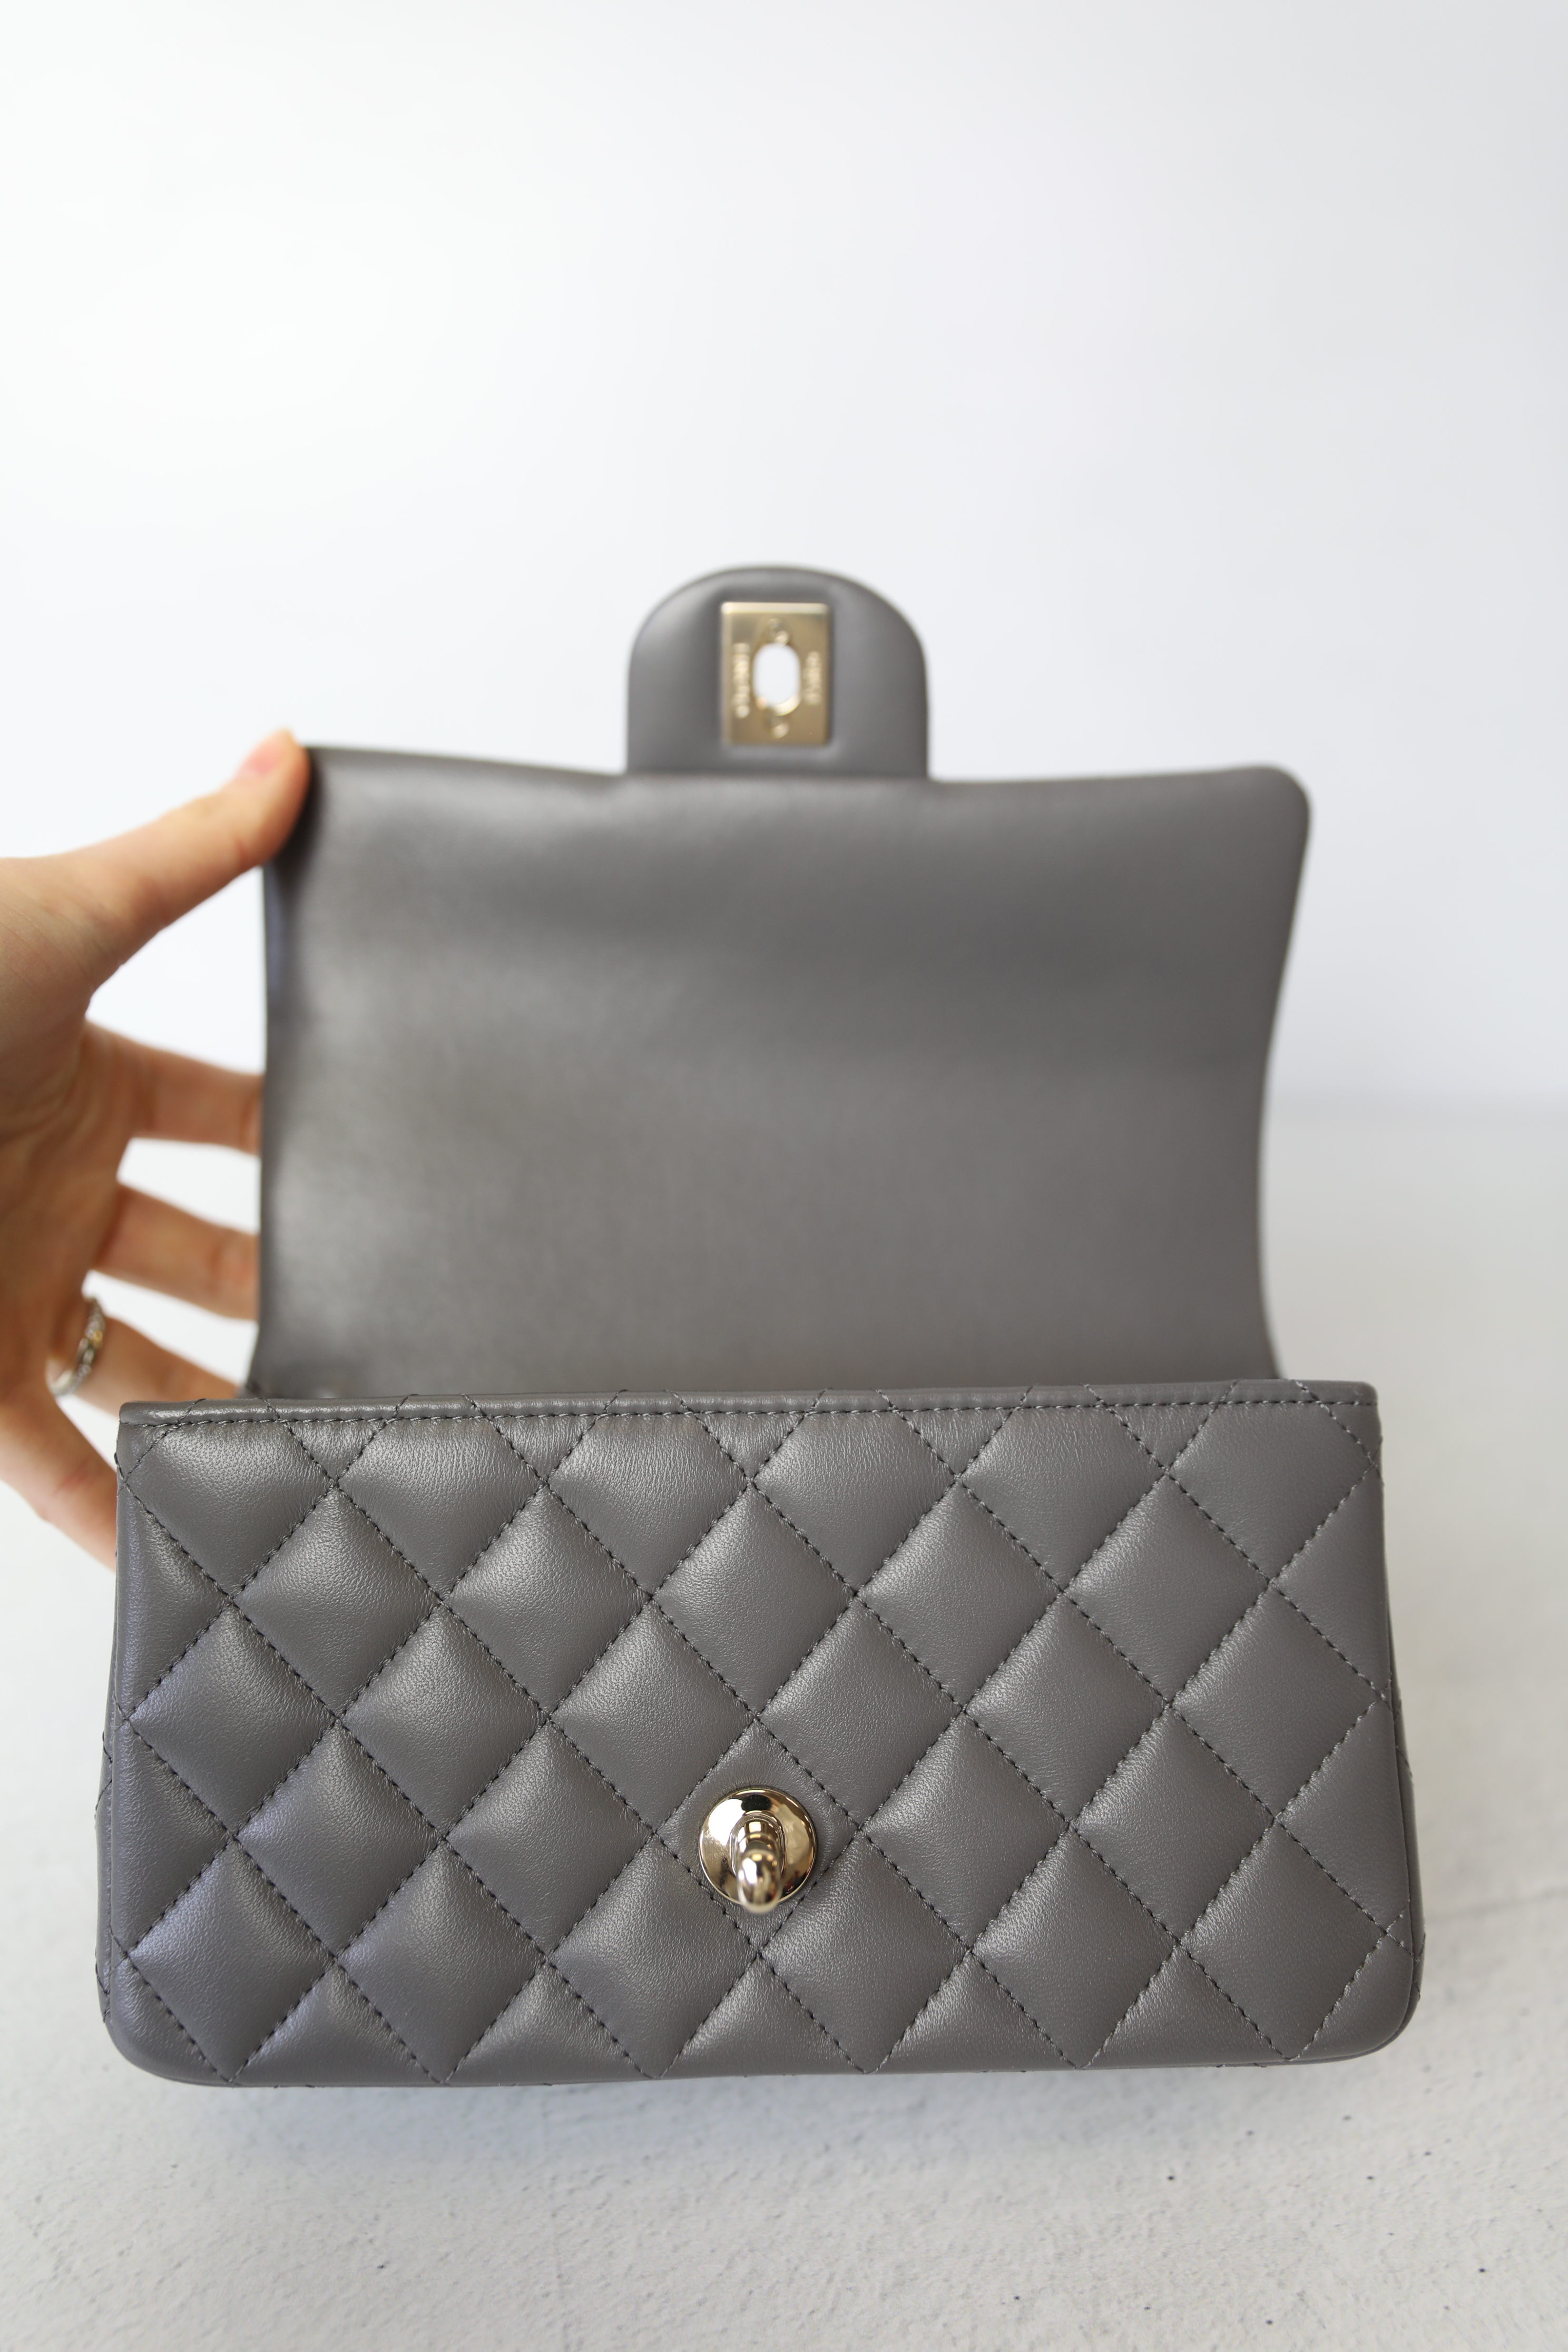 Chanel Top Handle Mini, Grey Lambskin with Gold Hardware, Preowned In Box  WA001 - Julia Rose Boston